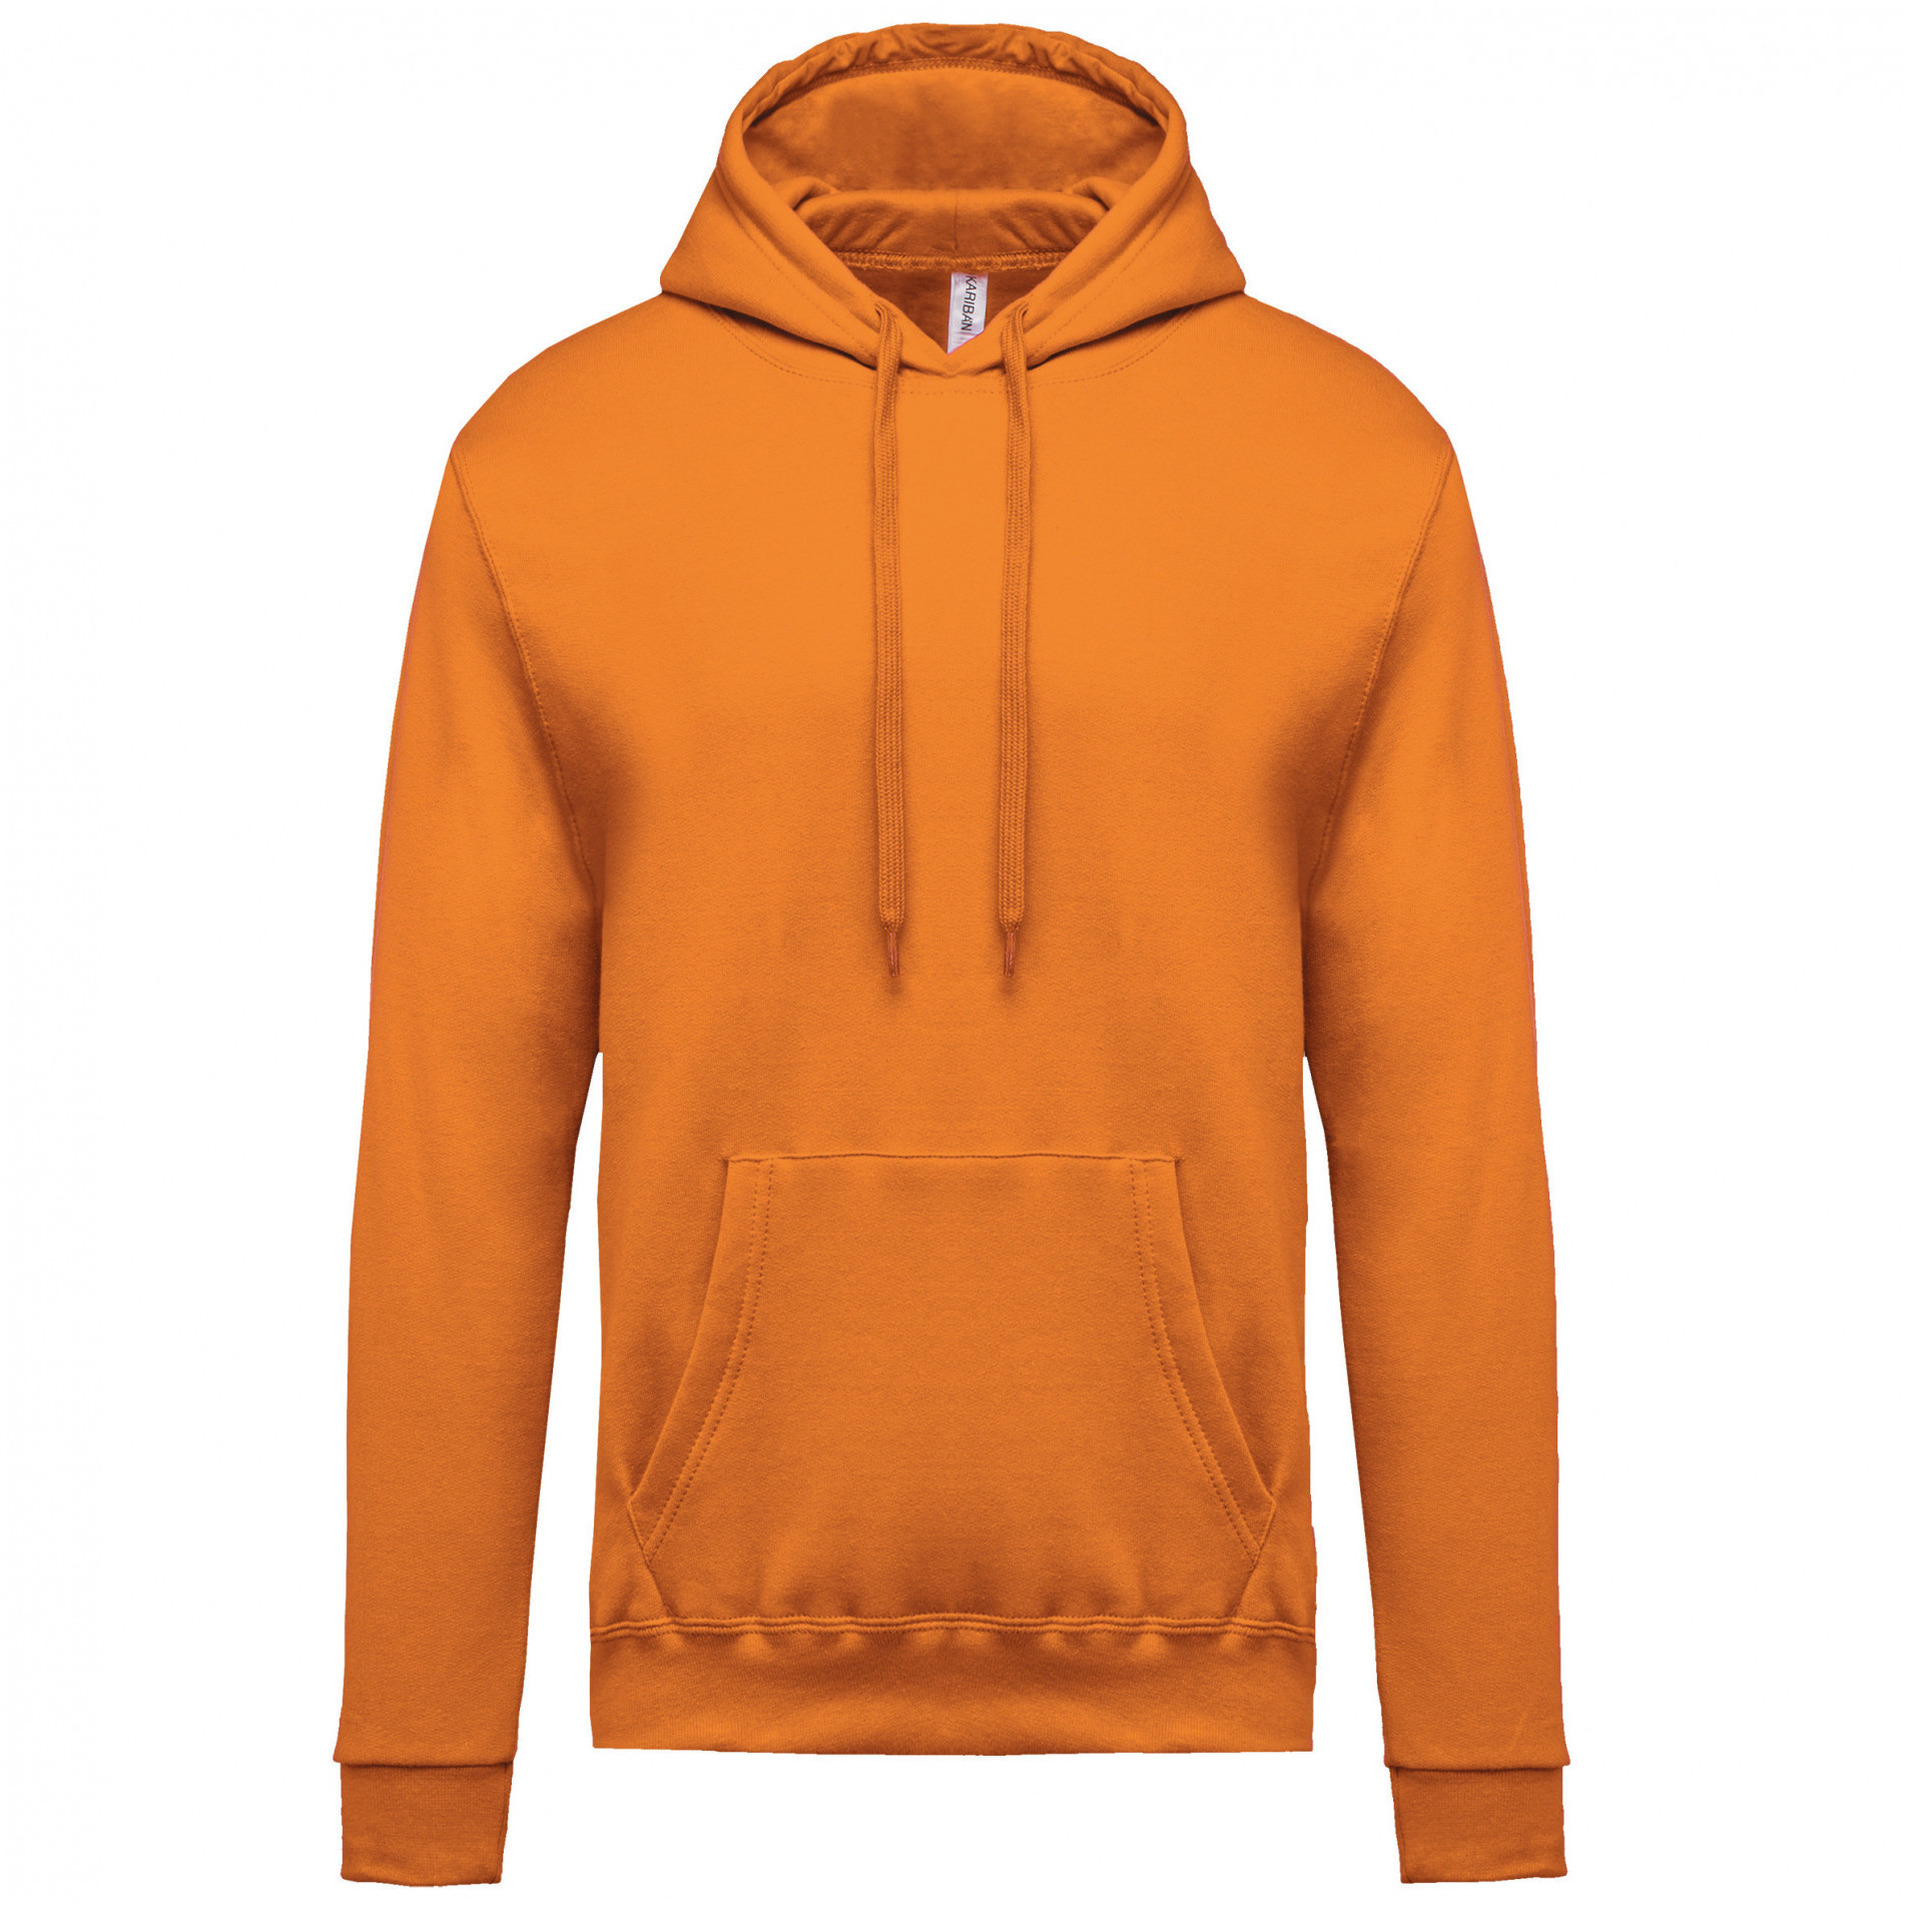 Grote maten oranje sweater/trui hoodie voor heren